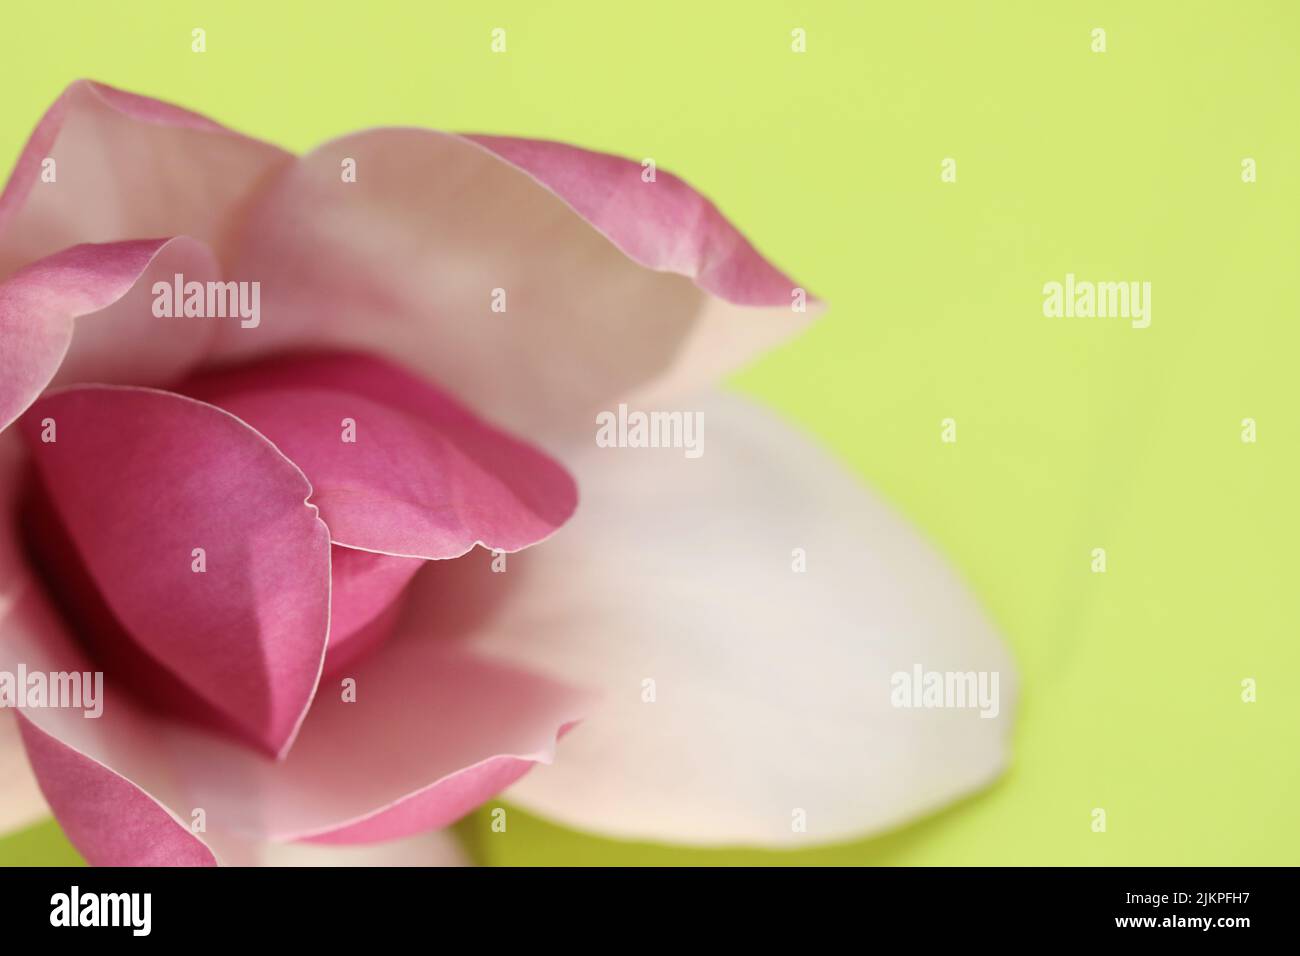 Hermosos pétalos rosados perfectos y flores de un árbol de Magnolia. Primer plano mostrando una forma delicada sobre un fondo verde amarillo. Foto de stock